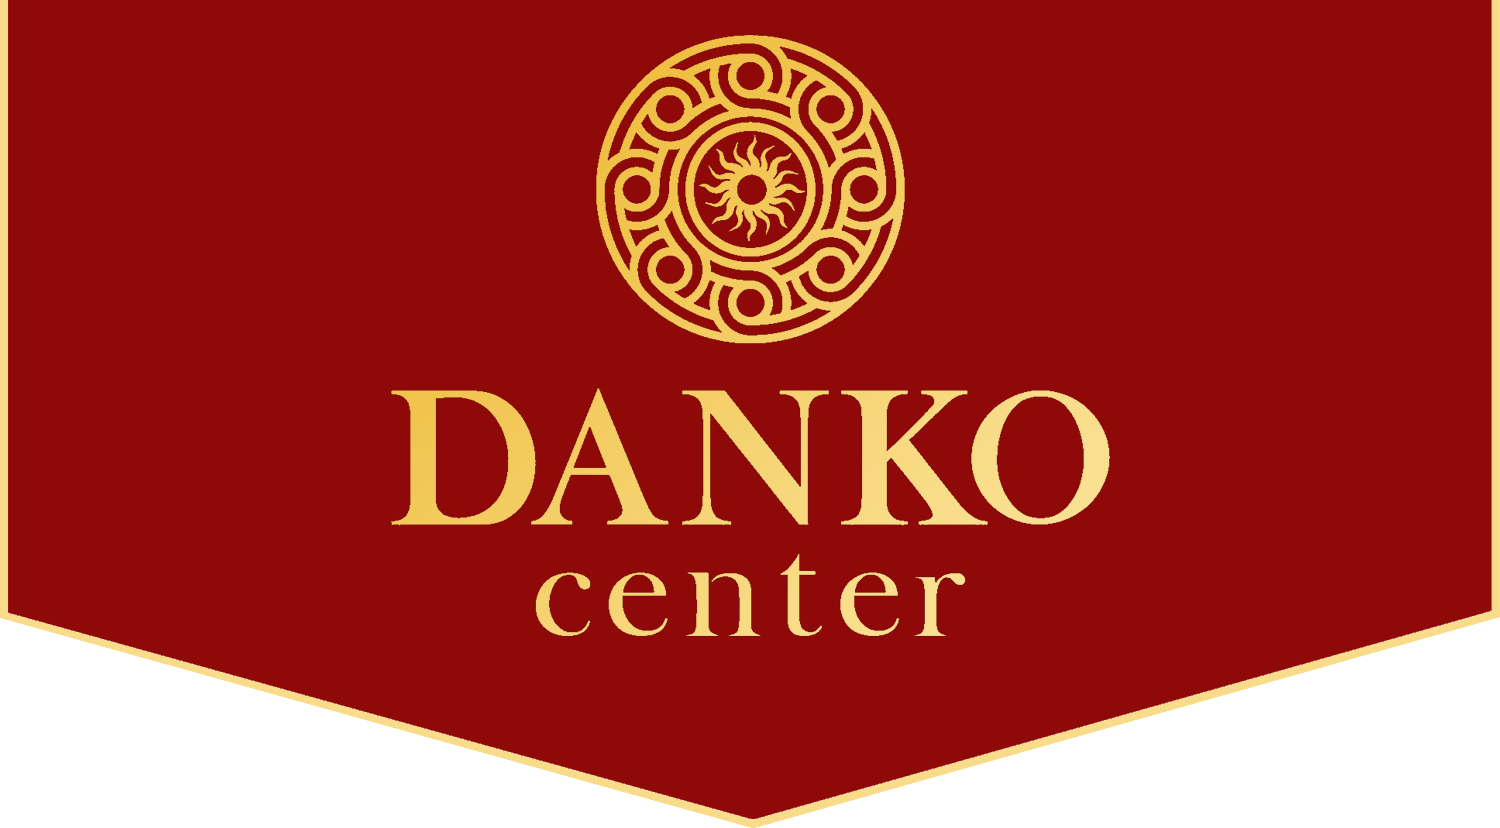 Danko Center